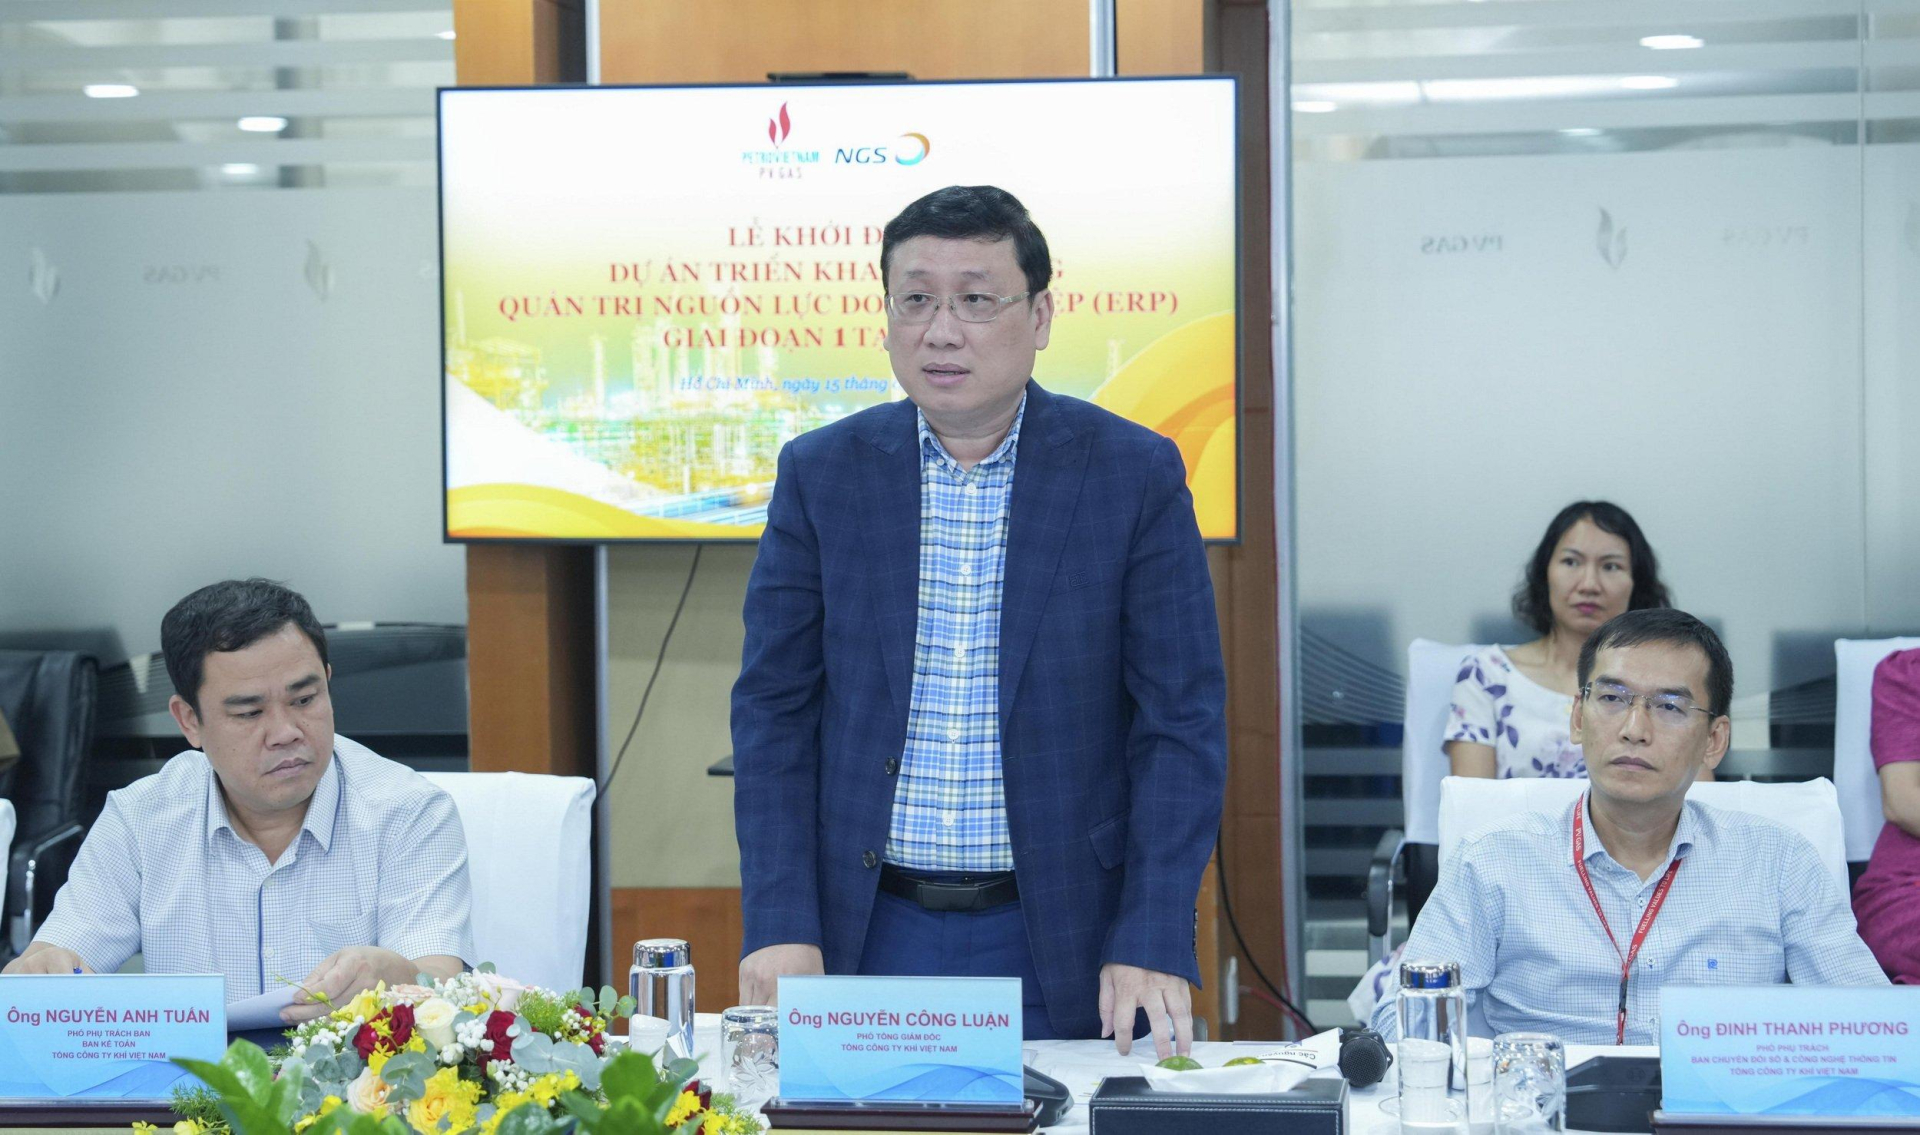 Phó Tổng Giám đốc PV GAS Nguyễn Công Luận phát biểu tại buổi lễ.